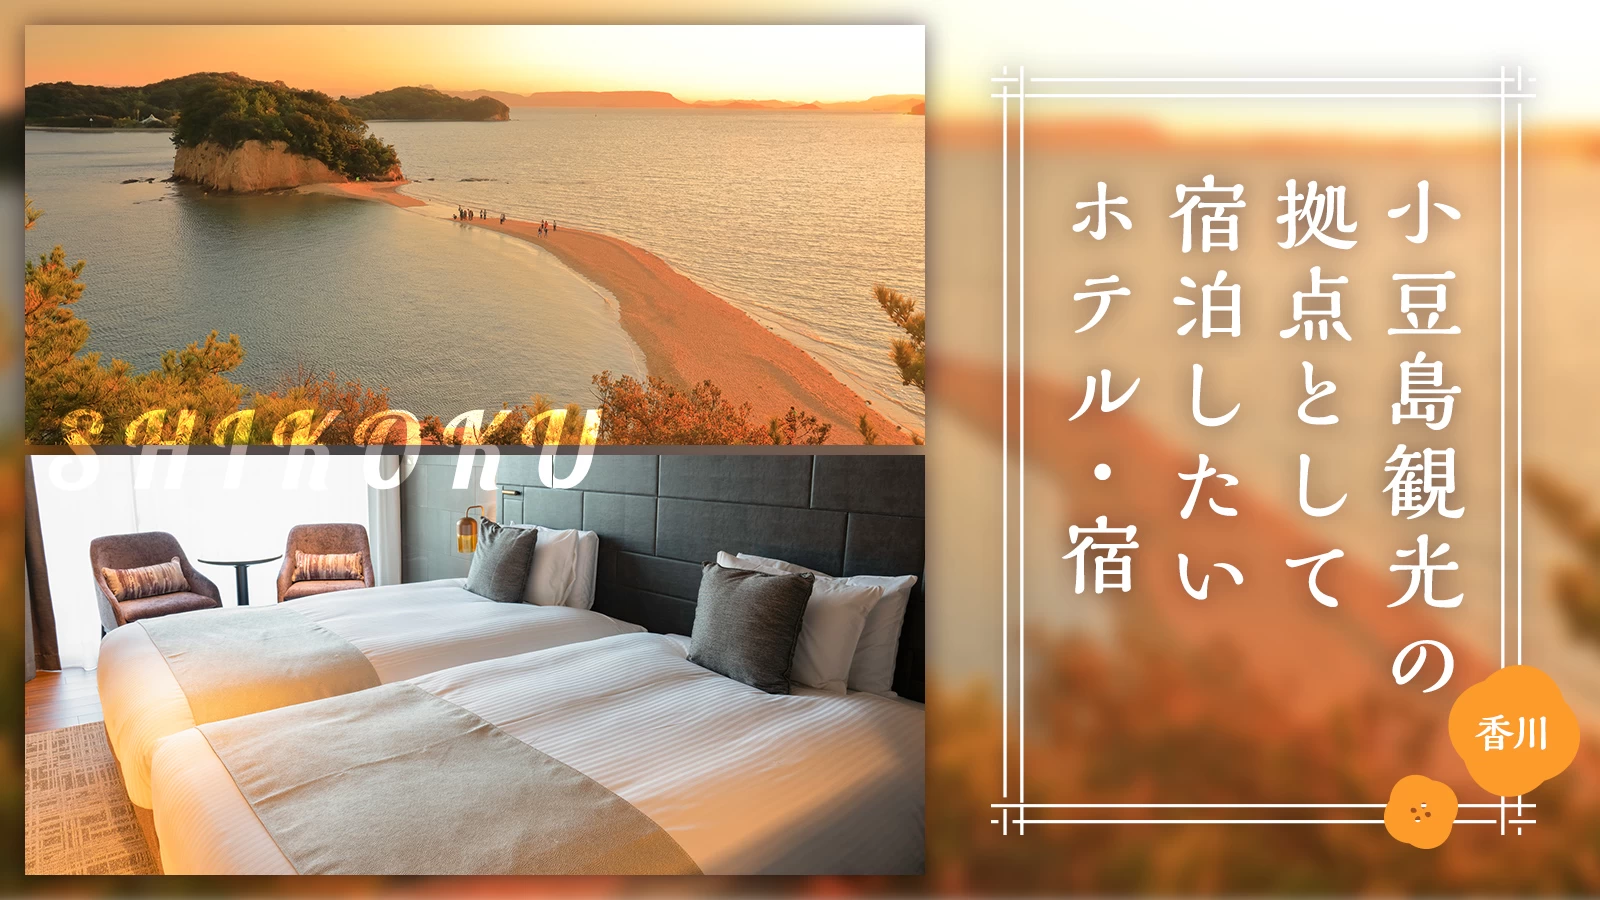 【四国・香川】小豆島観光の拠点として宿泊したいおすすめホテル・宿5選